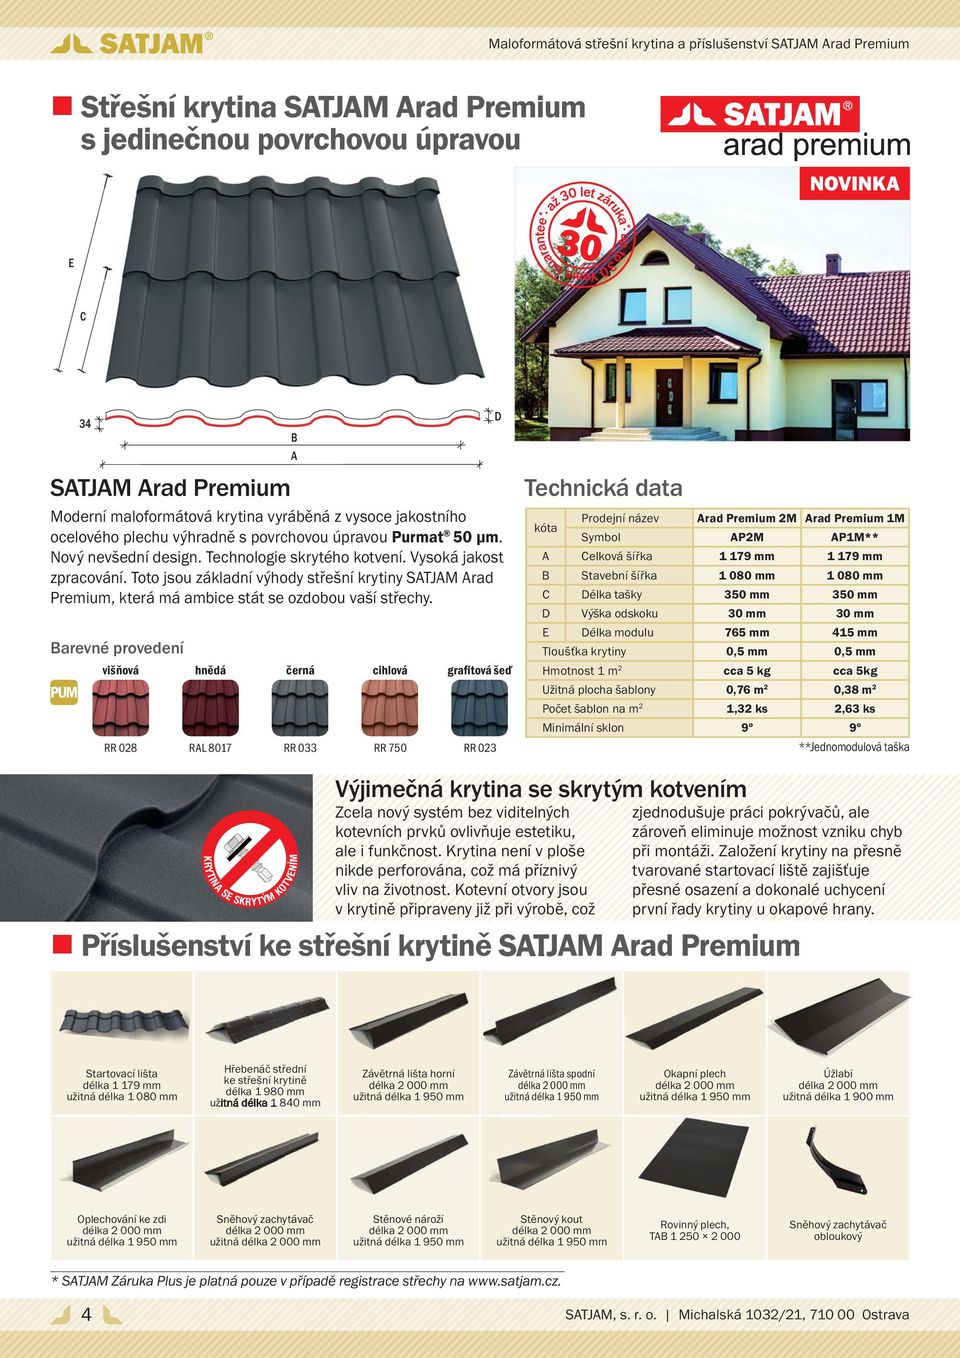 Toto jsou základní výhody střešní krytiny SATJAM Arad Premium, která má ambice stát se ozdobou vaší střechy.